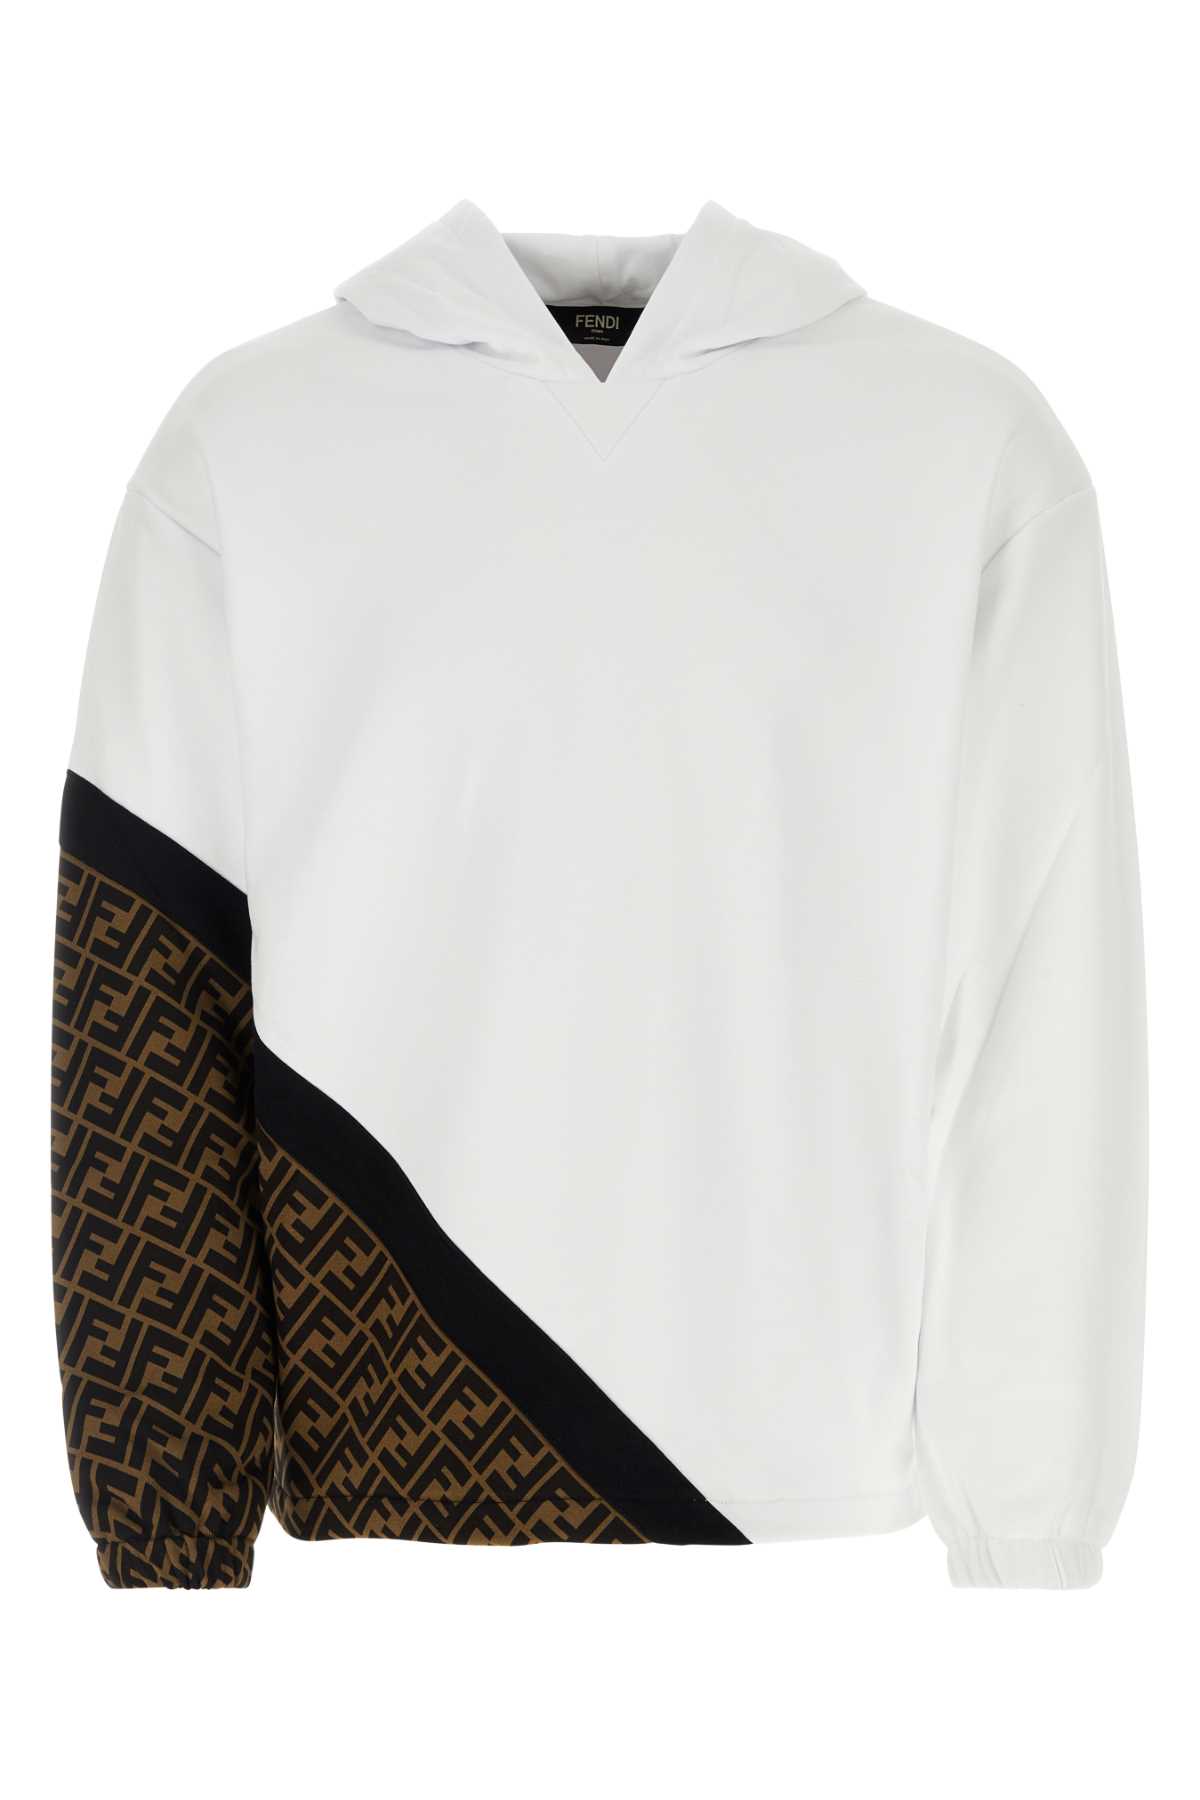 Shop Fendi White Jersey Sweatshirt In F1krq